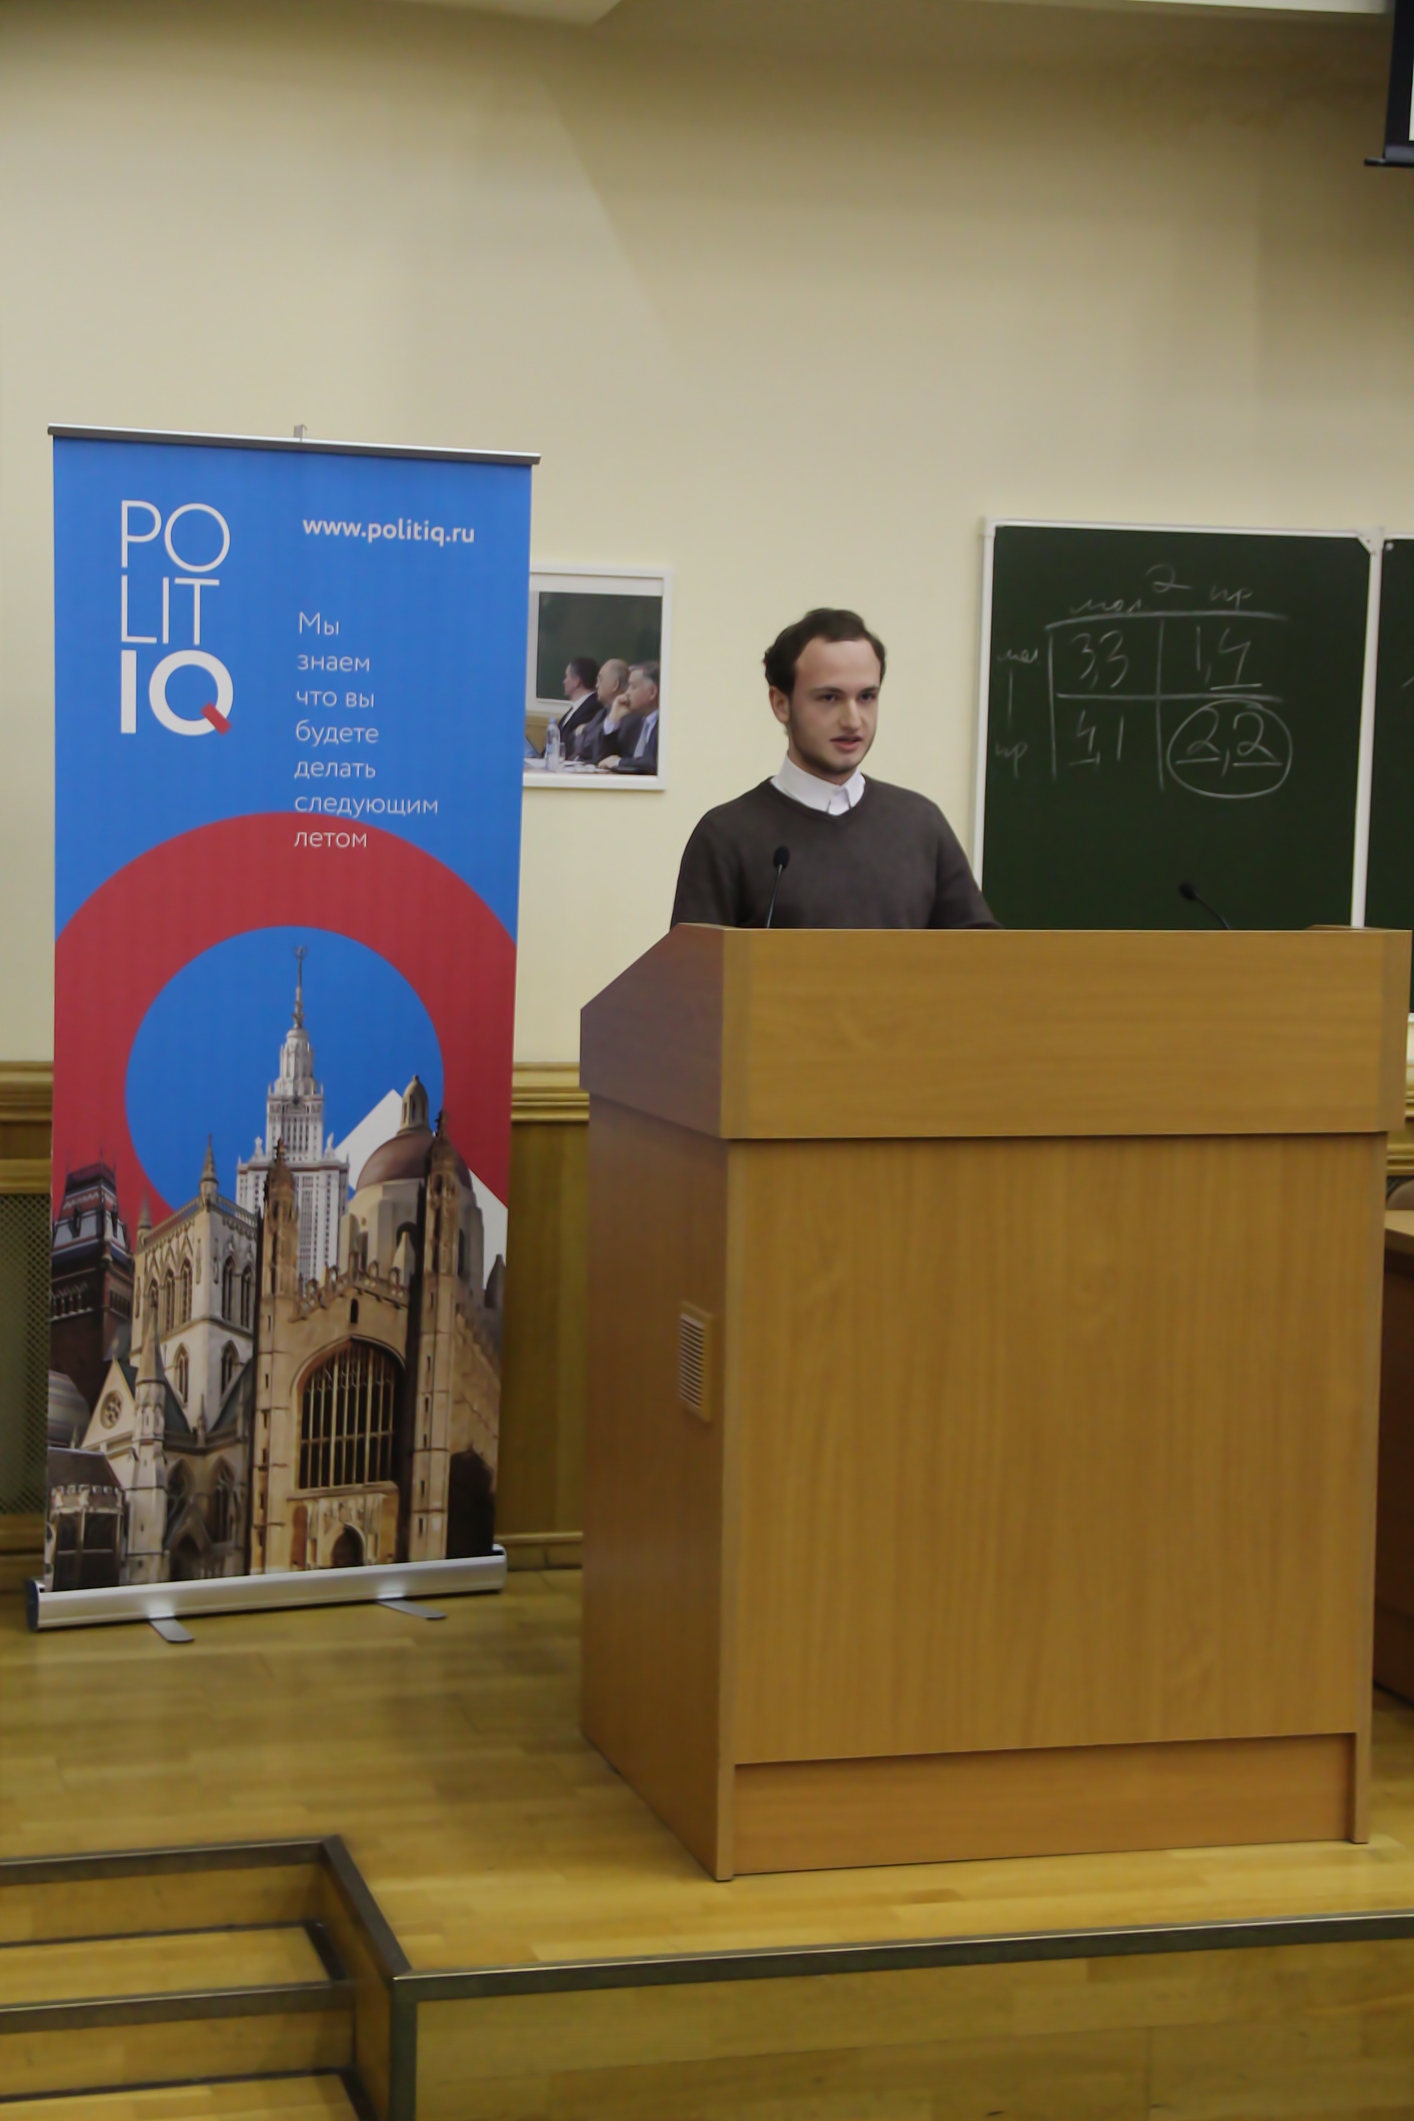 В МГУ состоялась презентация образовательной программы по политологии для студентов PolitIQ